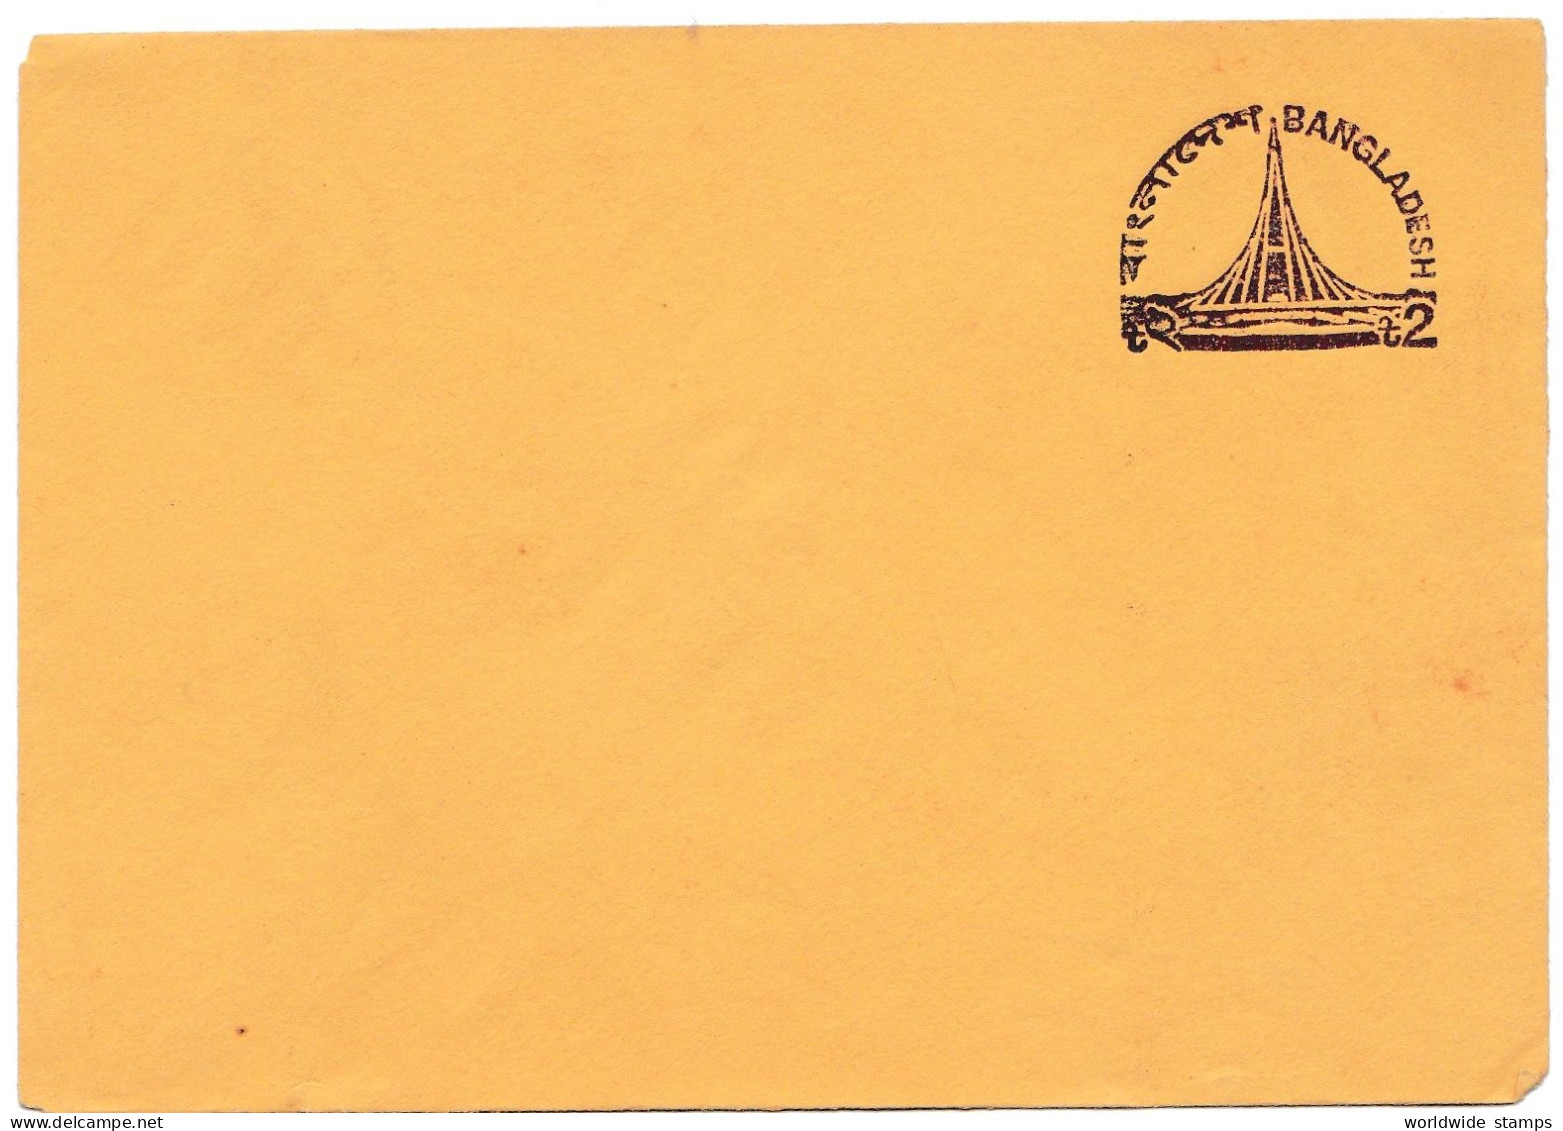 Bangladesh Stationary 1 Tk Envelope / Cover Mint. - Bangladesch